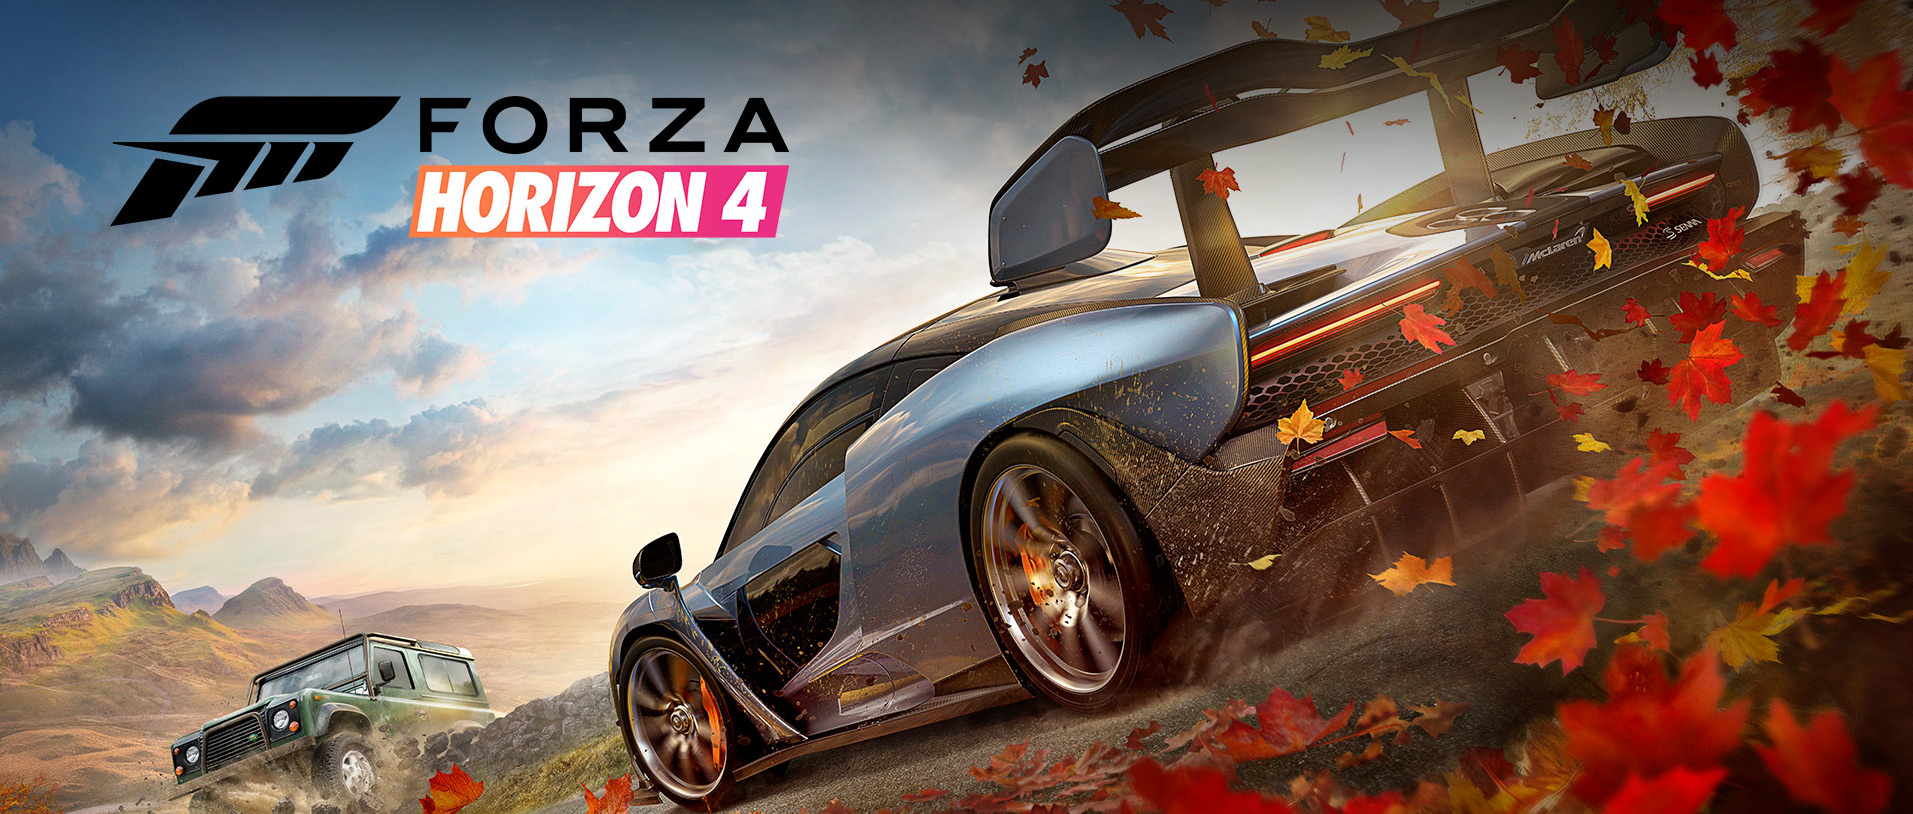 Image Test Forza Horizon 4 Xbox One X